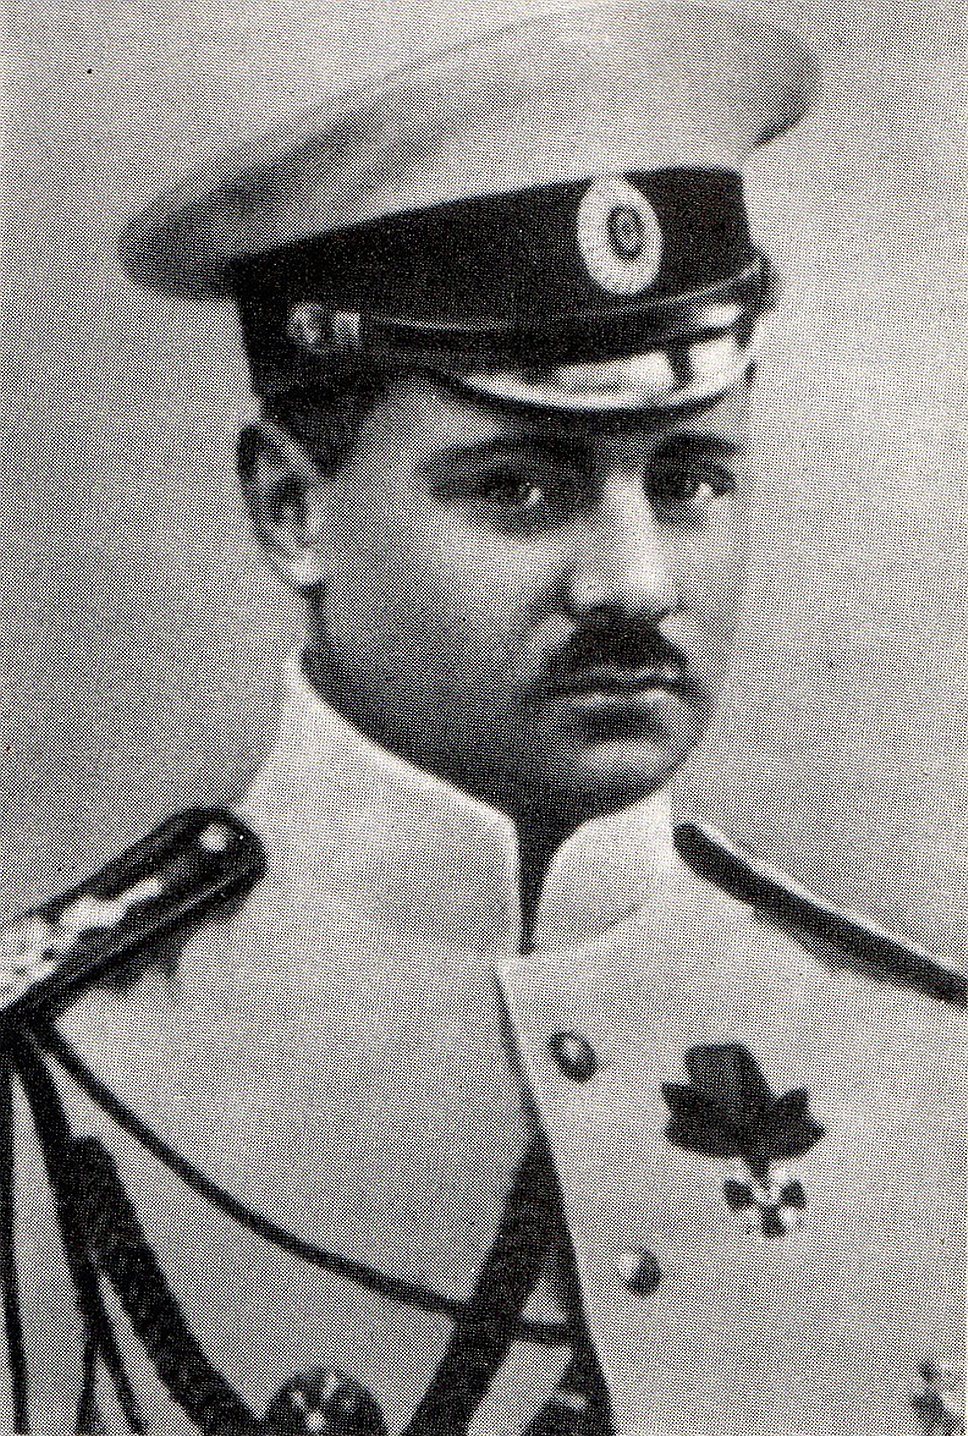 Генерал Б. А. Вилькицкий, 1913 год 